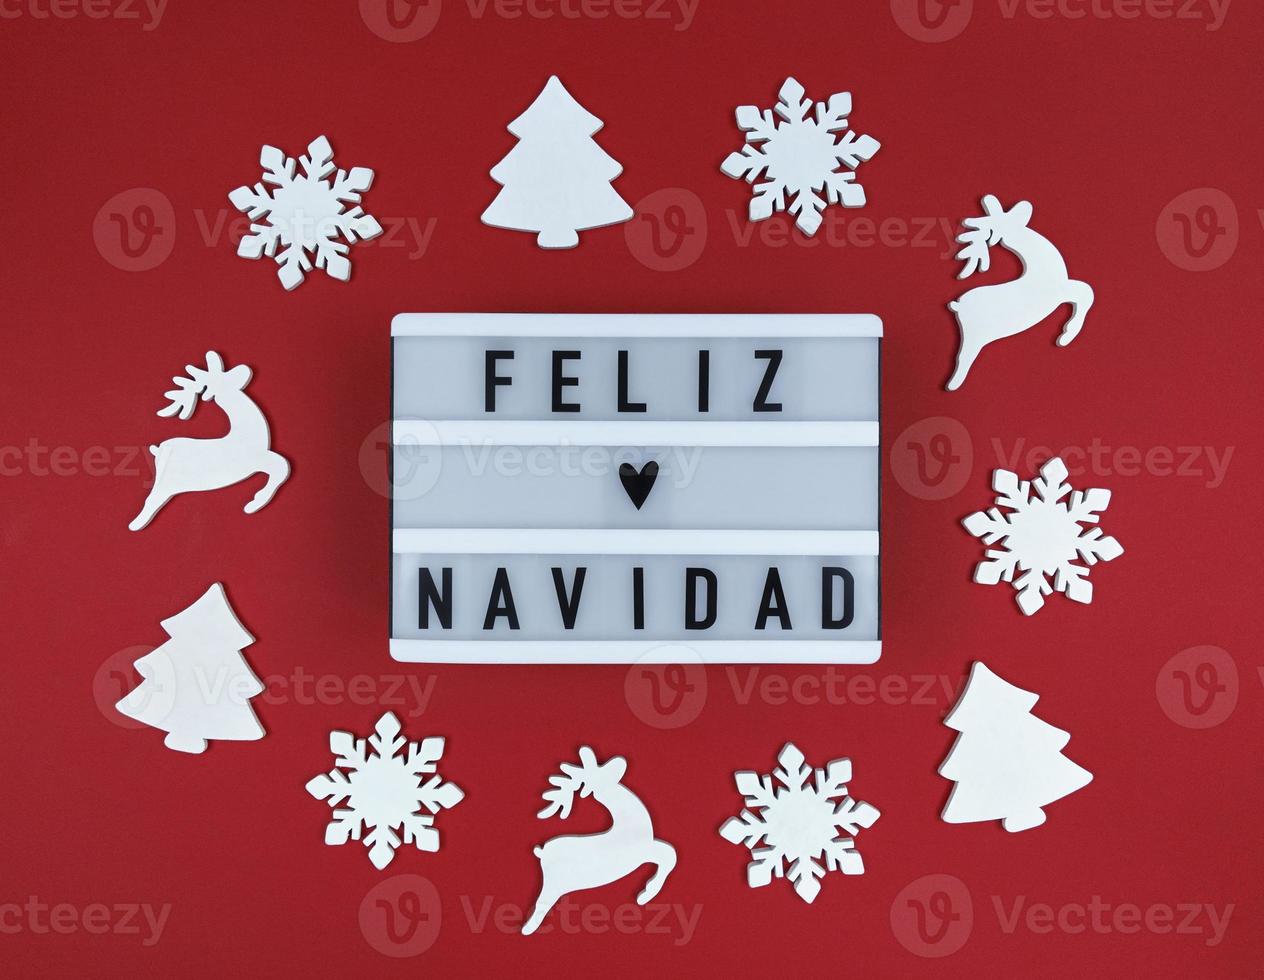 caisson lumineux avec phrase feliz navidad, joyeux noël espagnol sur fond rouge avec des jouets en bois. photo